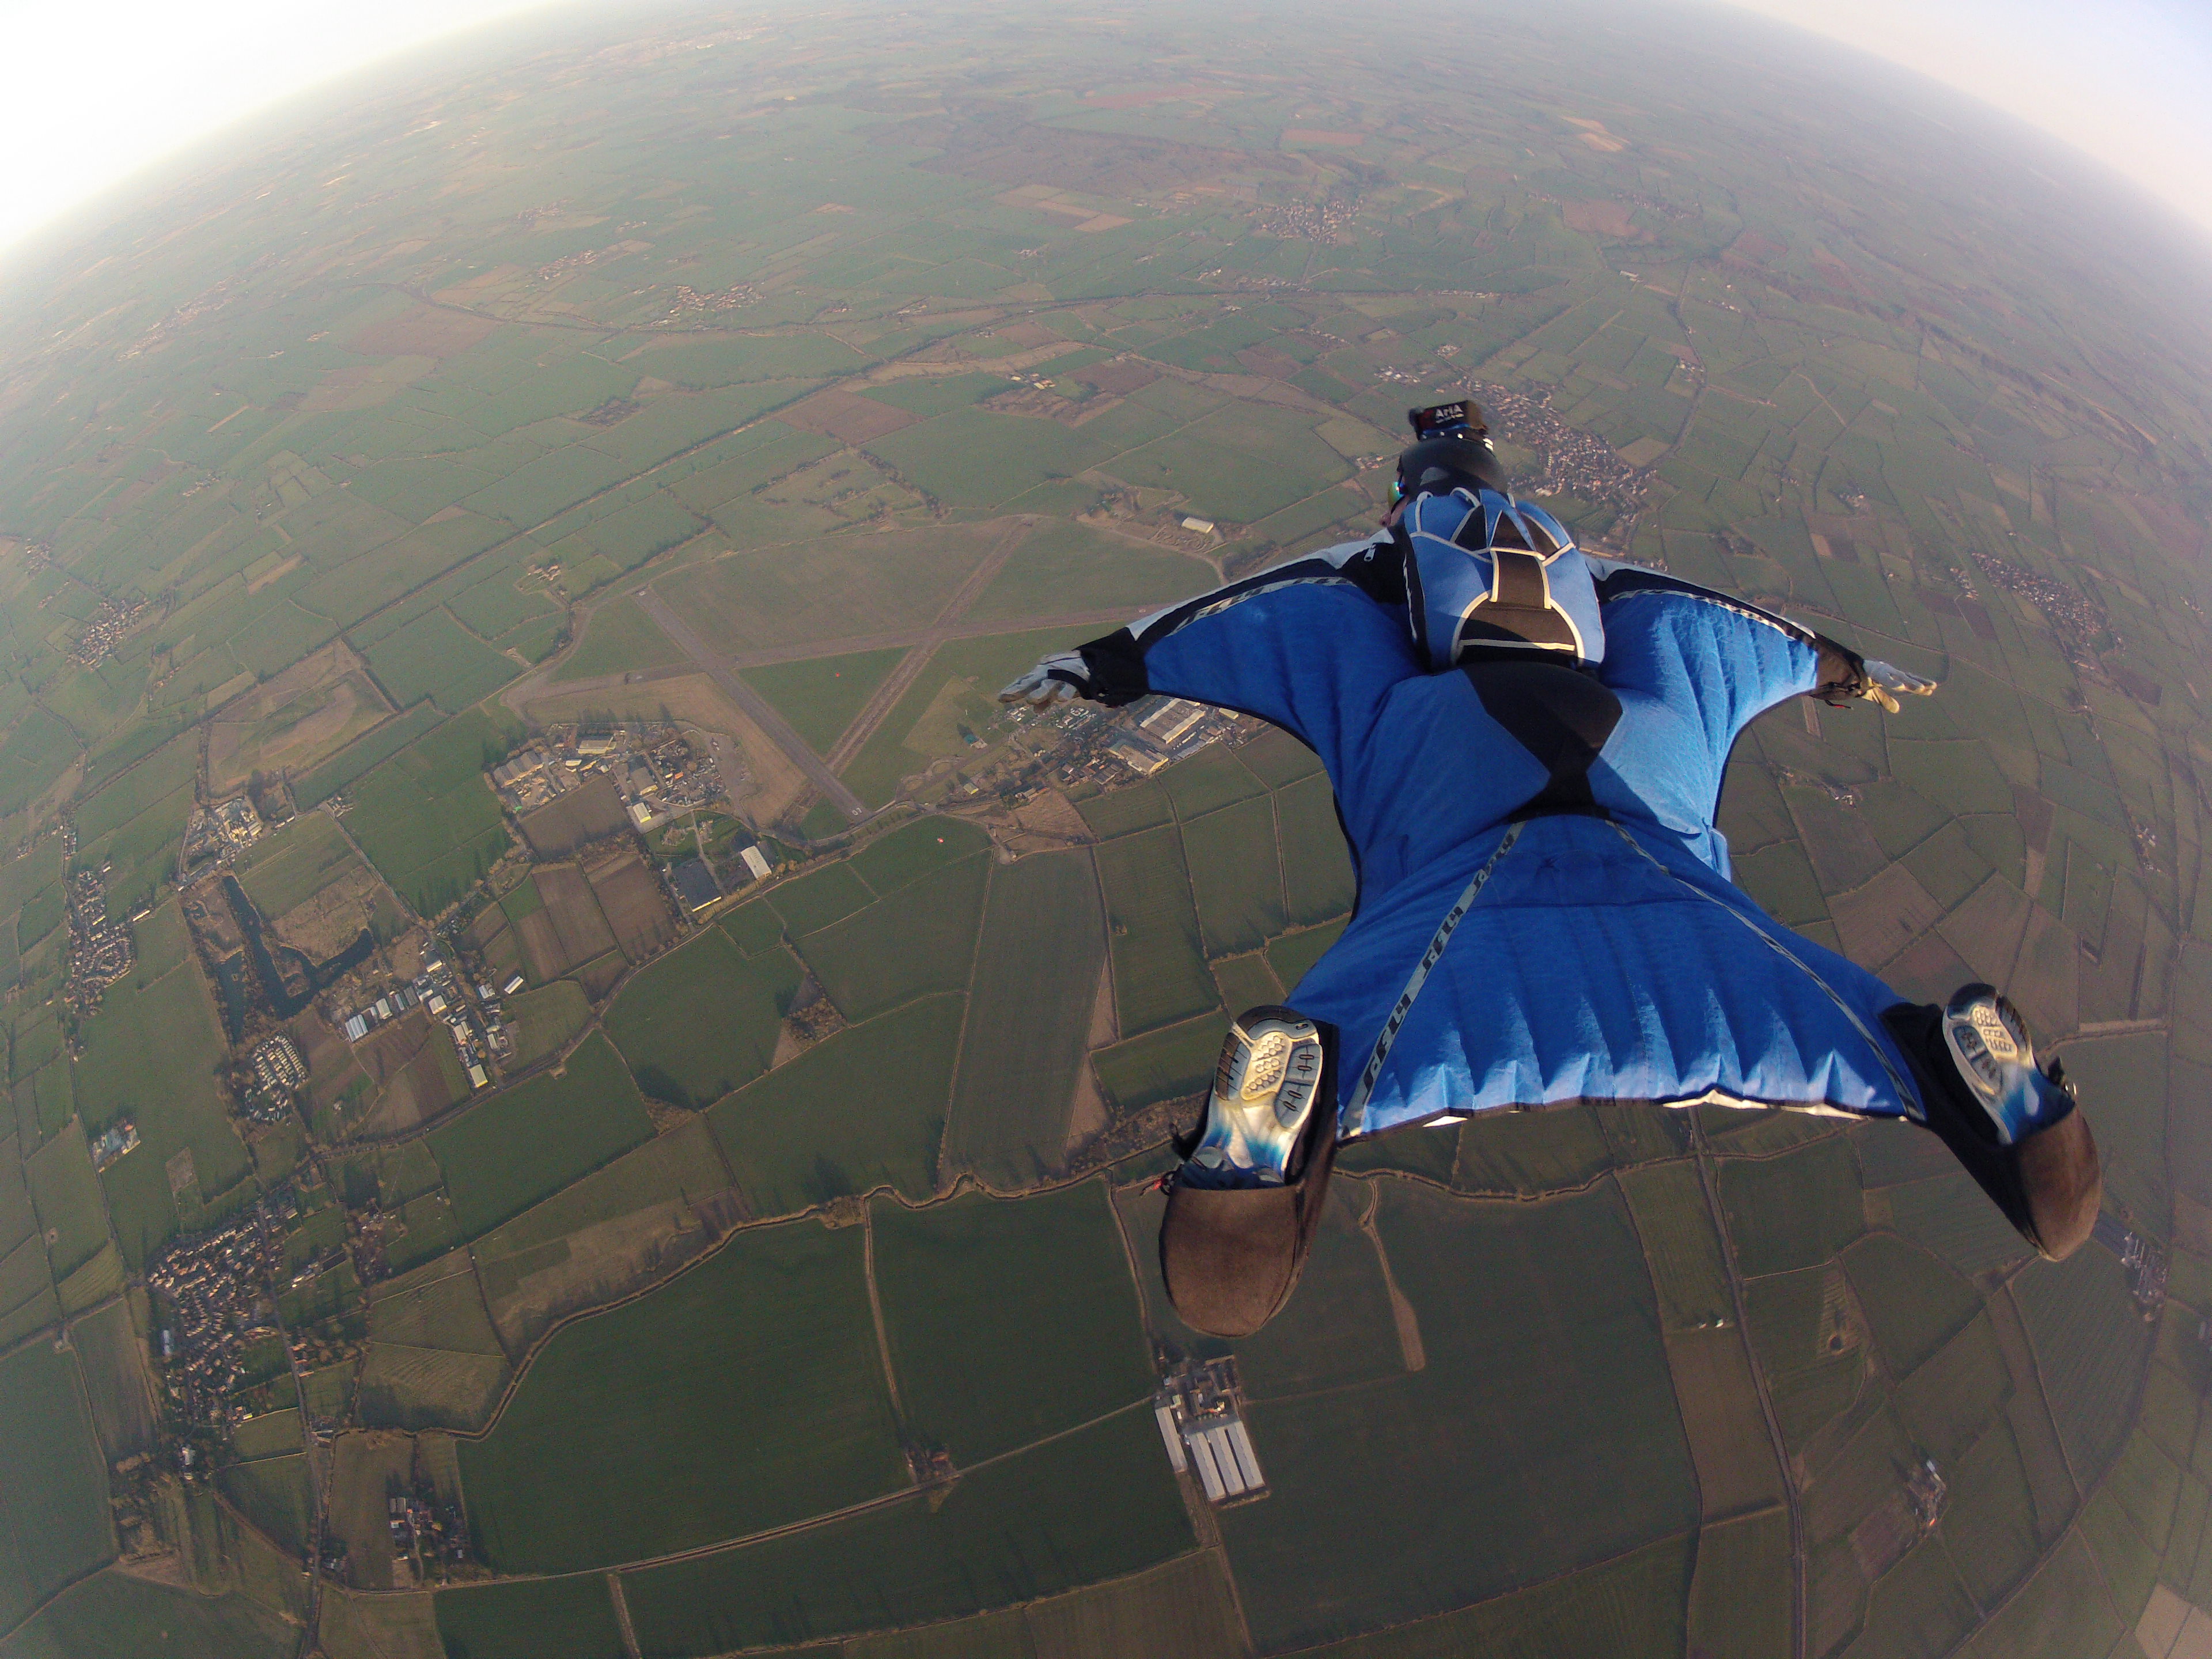 Wingsuit_Flying_over_Langar_Airfield_UK.jpg